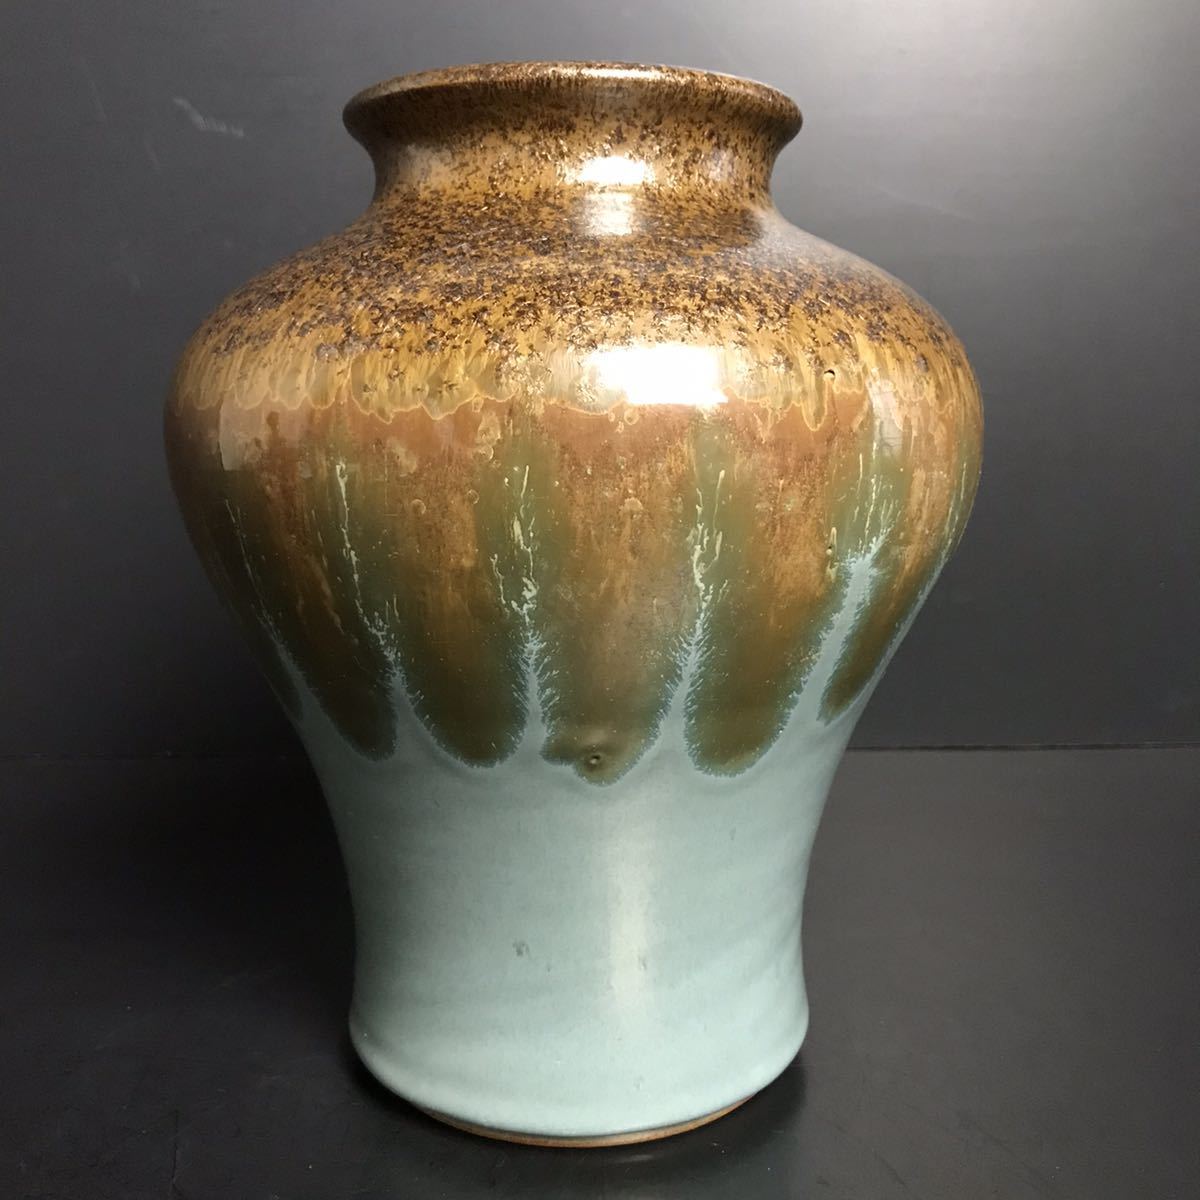 リーズナブルな価格 花瓶 花器 陶器 24.5cm db2fabc1 アウトレット最激安 -jobs.ruet.ac.bd